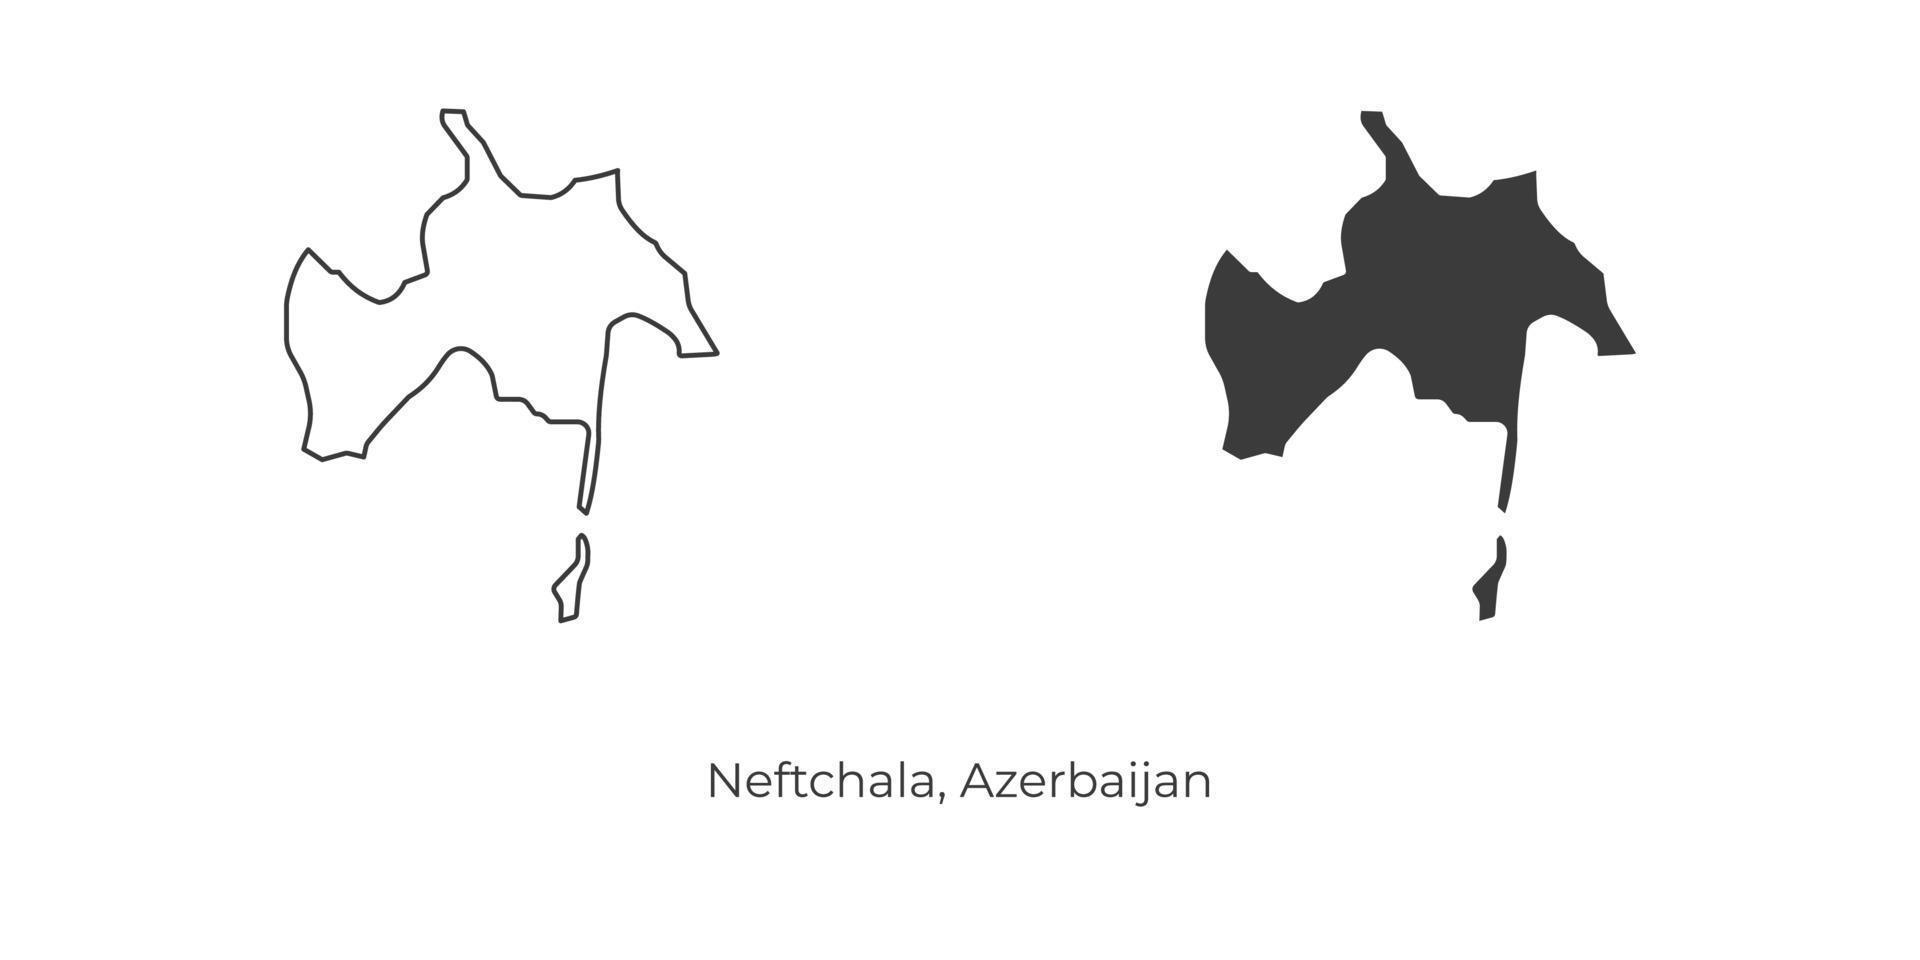 illustration vectorielle simple de la carte de neftchala, azerbaïdjan. vecteur